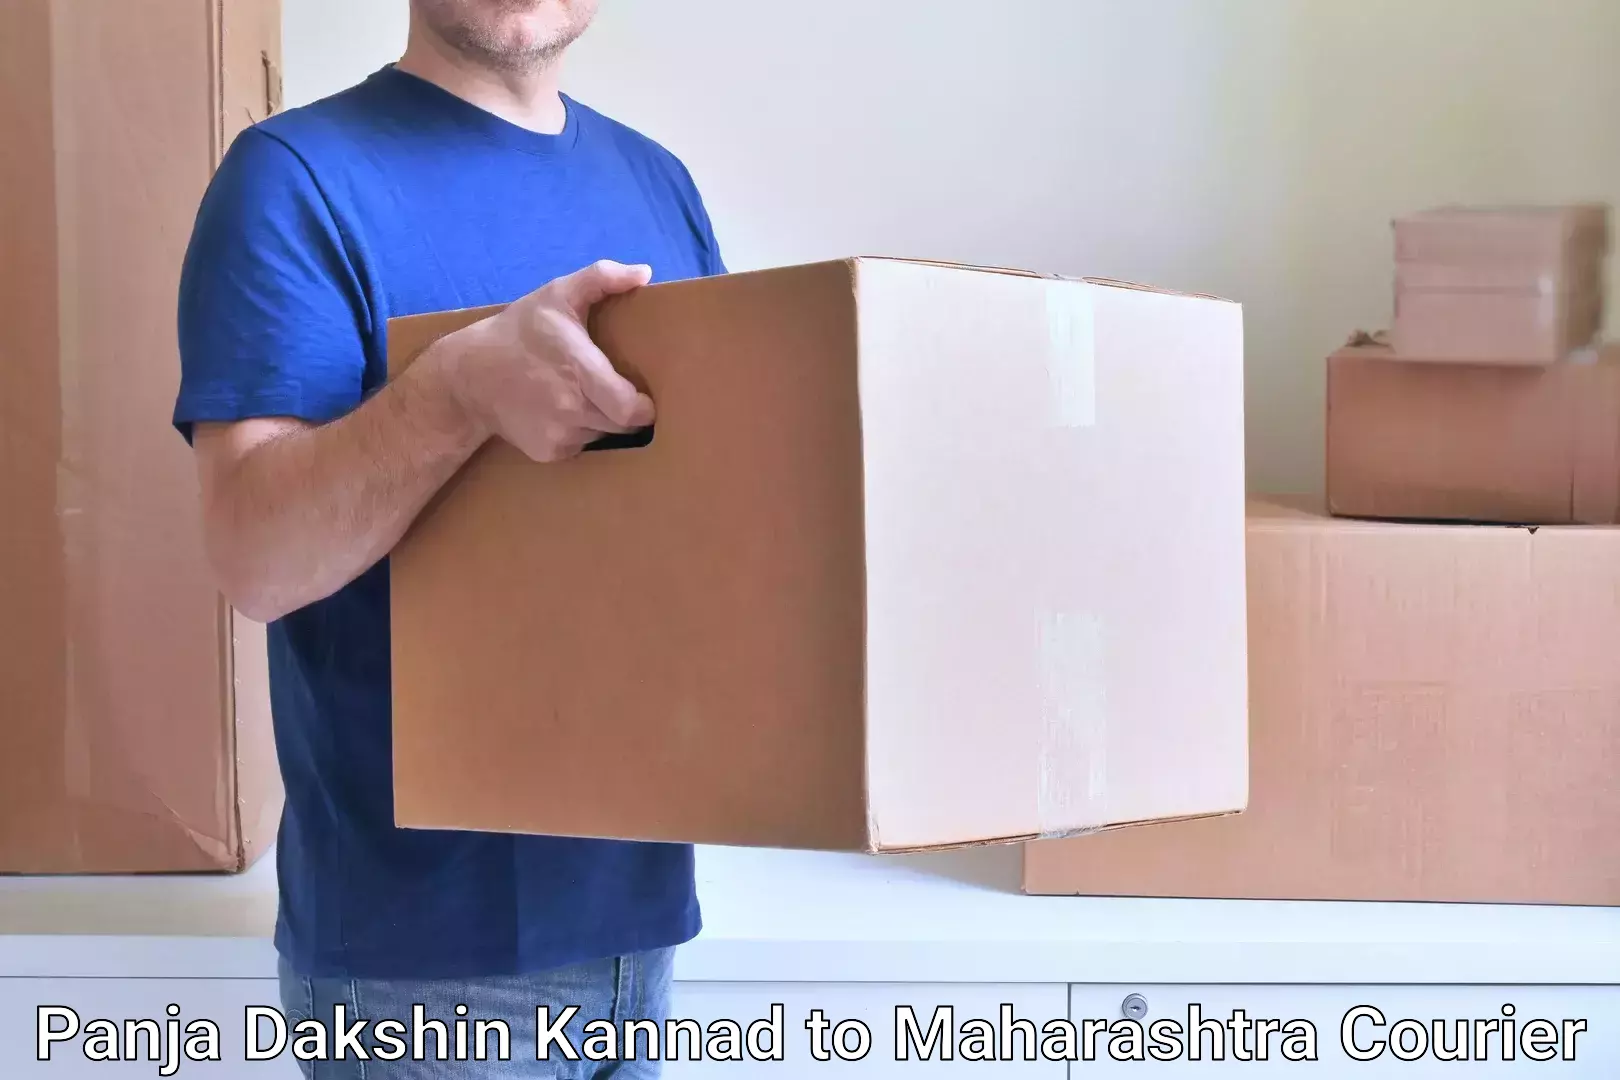 Professional courier handling Panja Dakshin Kannad to Chiplun